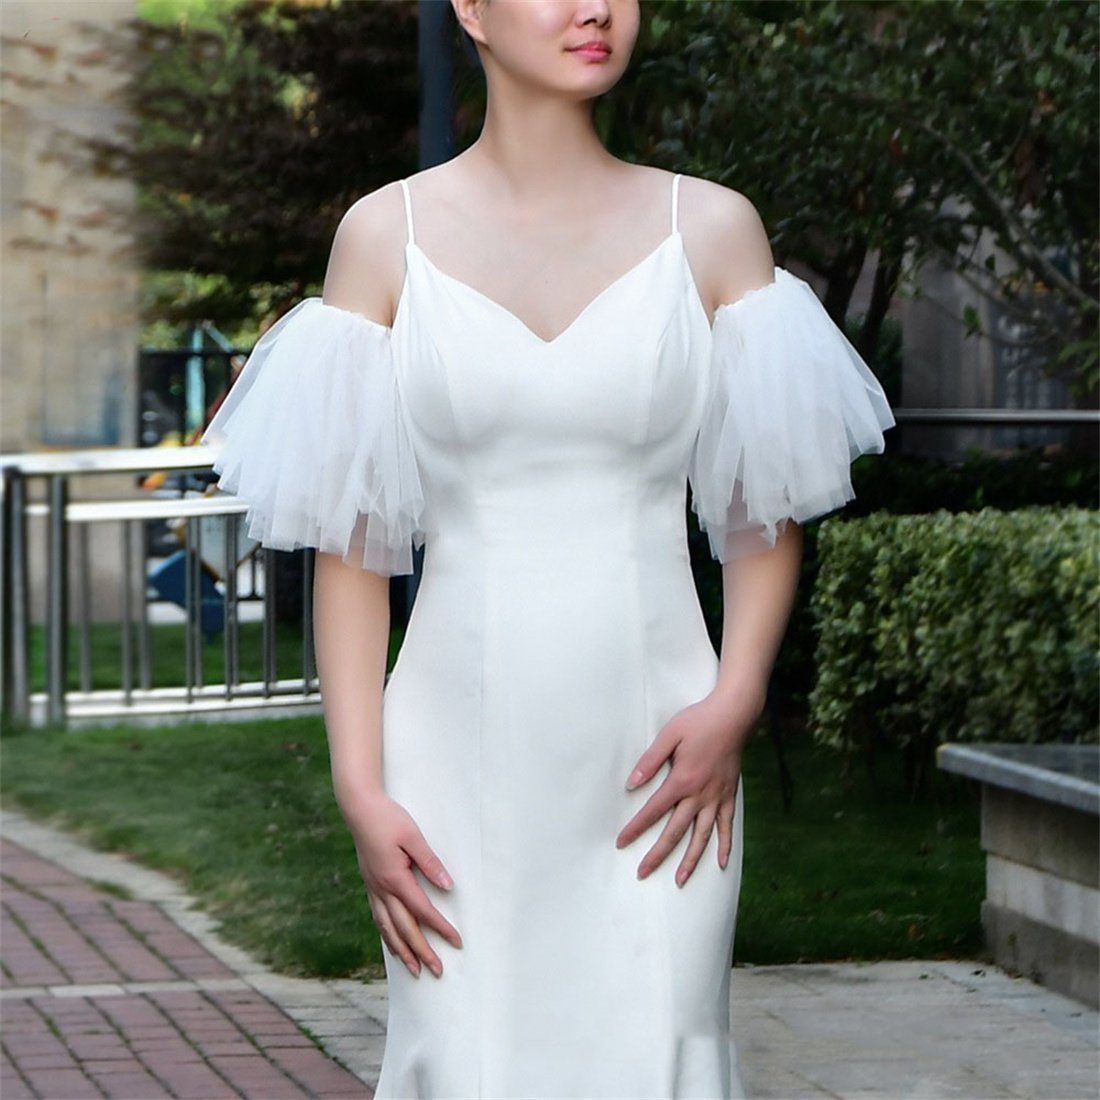 DÖRÖY Schleier Brautkleid mehrlagiges weißes Kleid Schal Accessoires mit mit Ärmeln